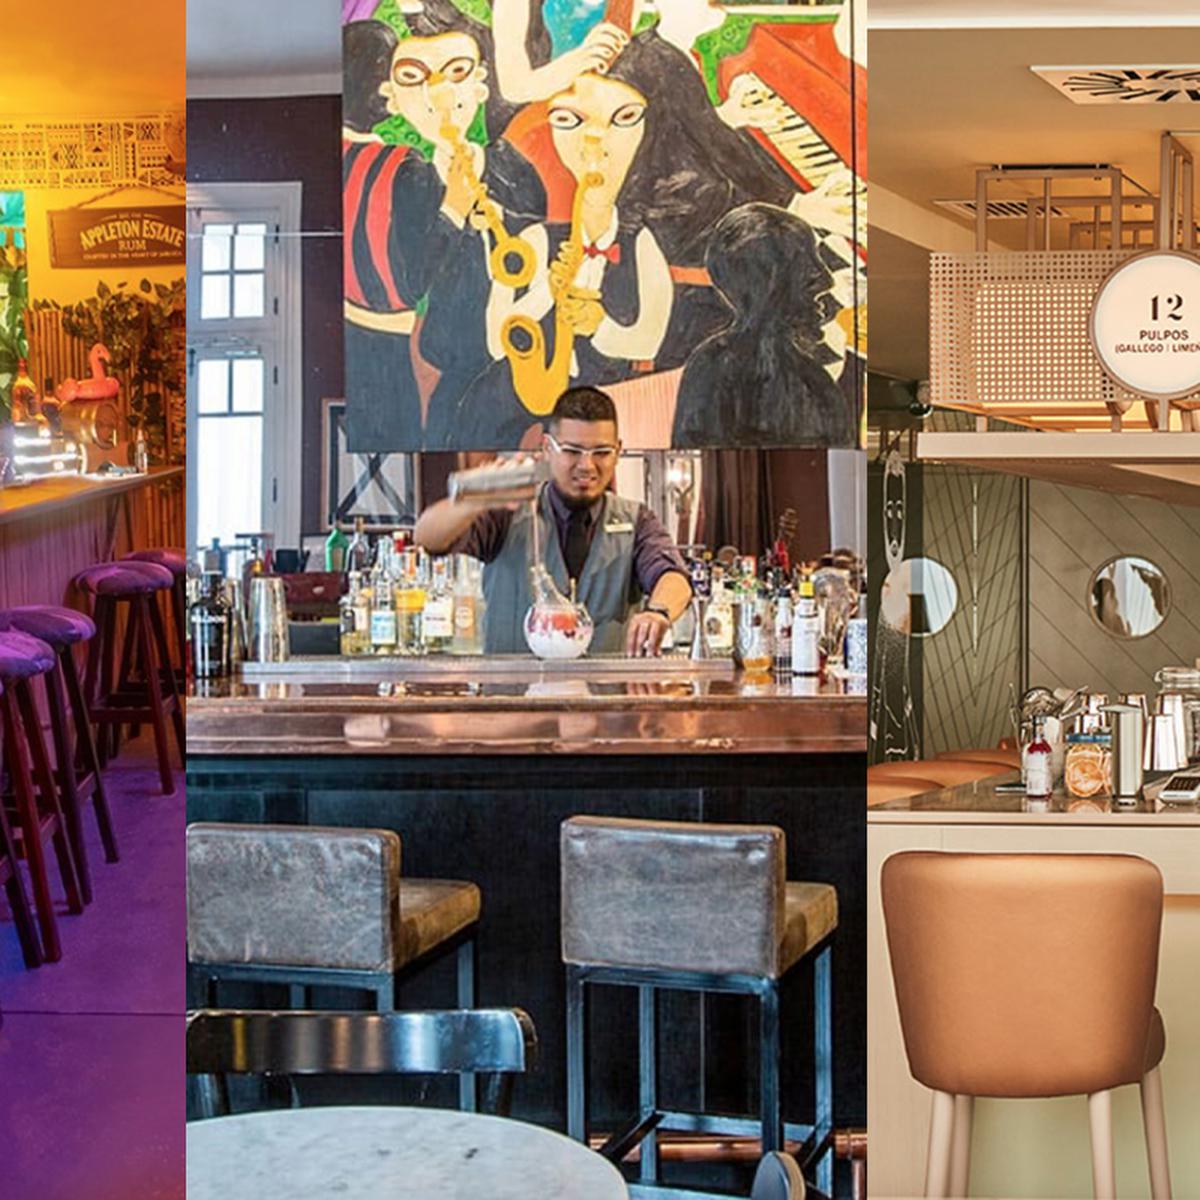 Ruta de bares en Lima: conoce los cocteles imperdibles que debes disfrutar  esta temporada | bar del hotel B | curayacu tiki bar | 27 tapas |  Miraflores | Barranco | VAMOS | EL COMERCIO PERÚ